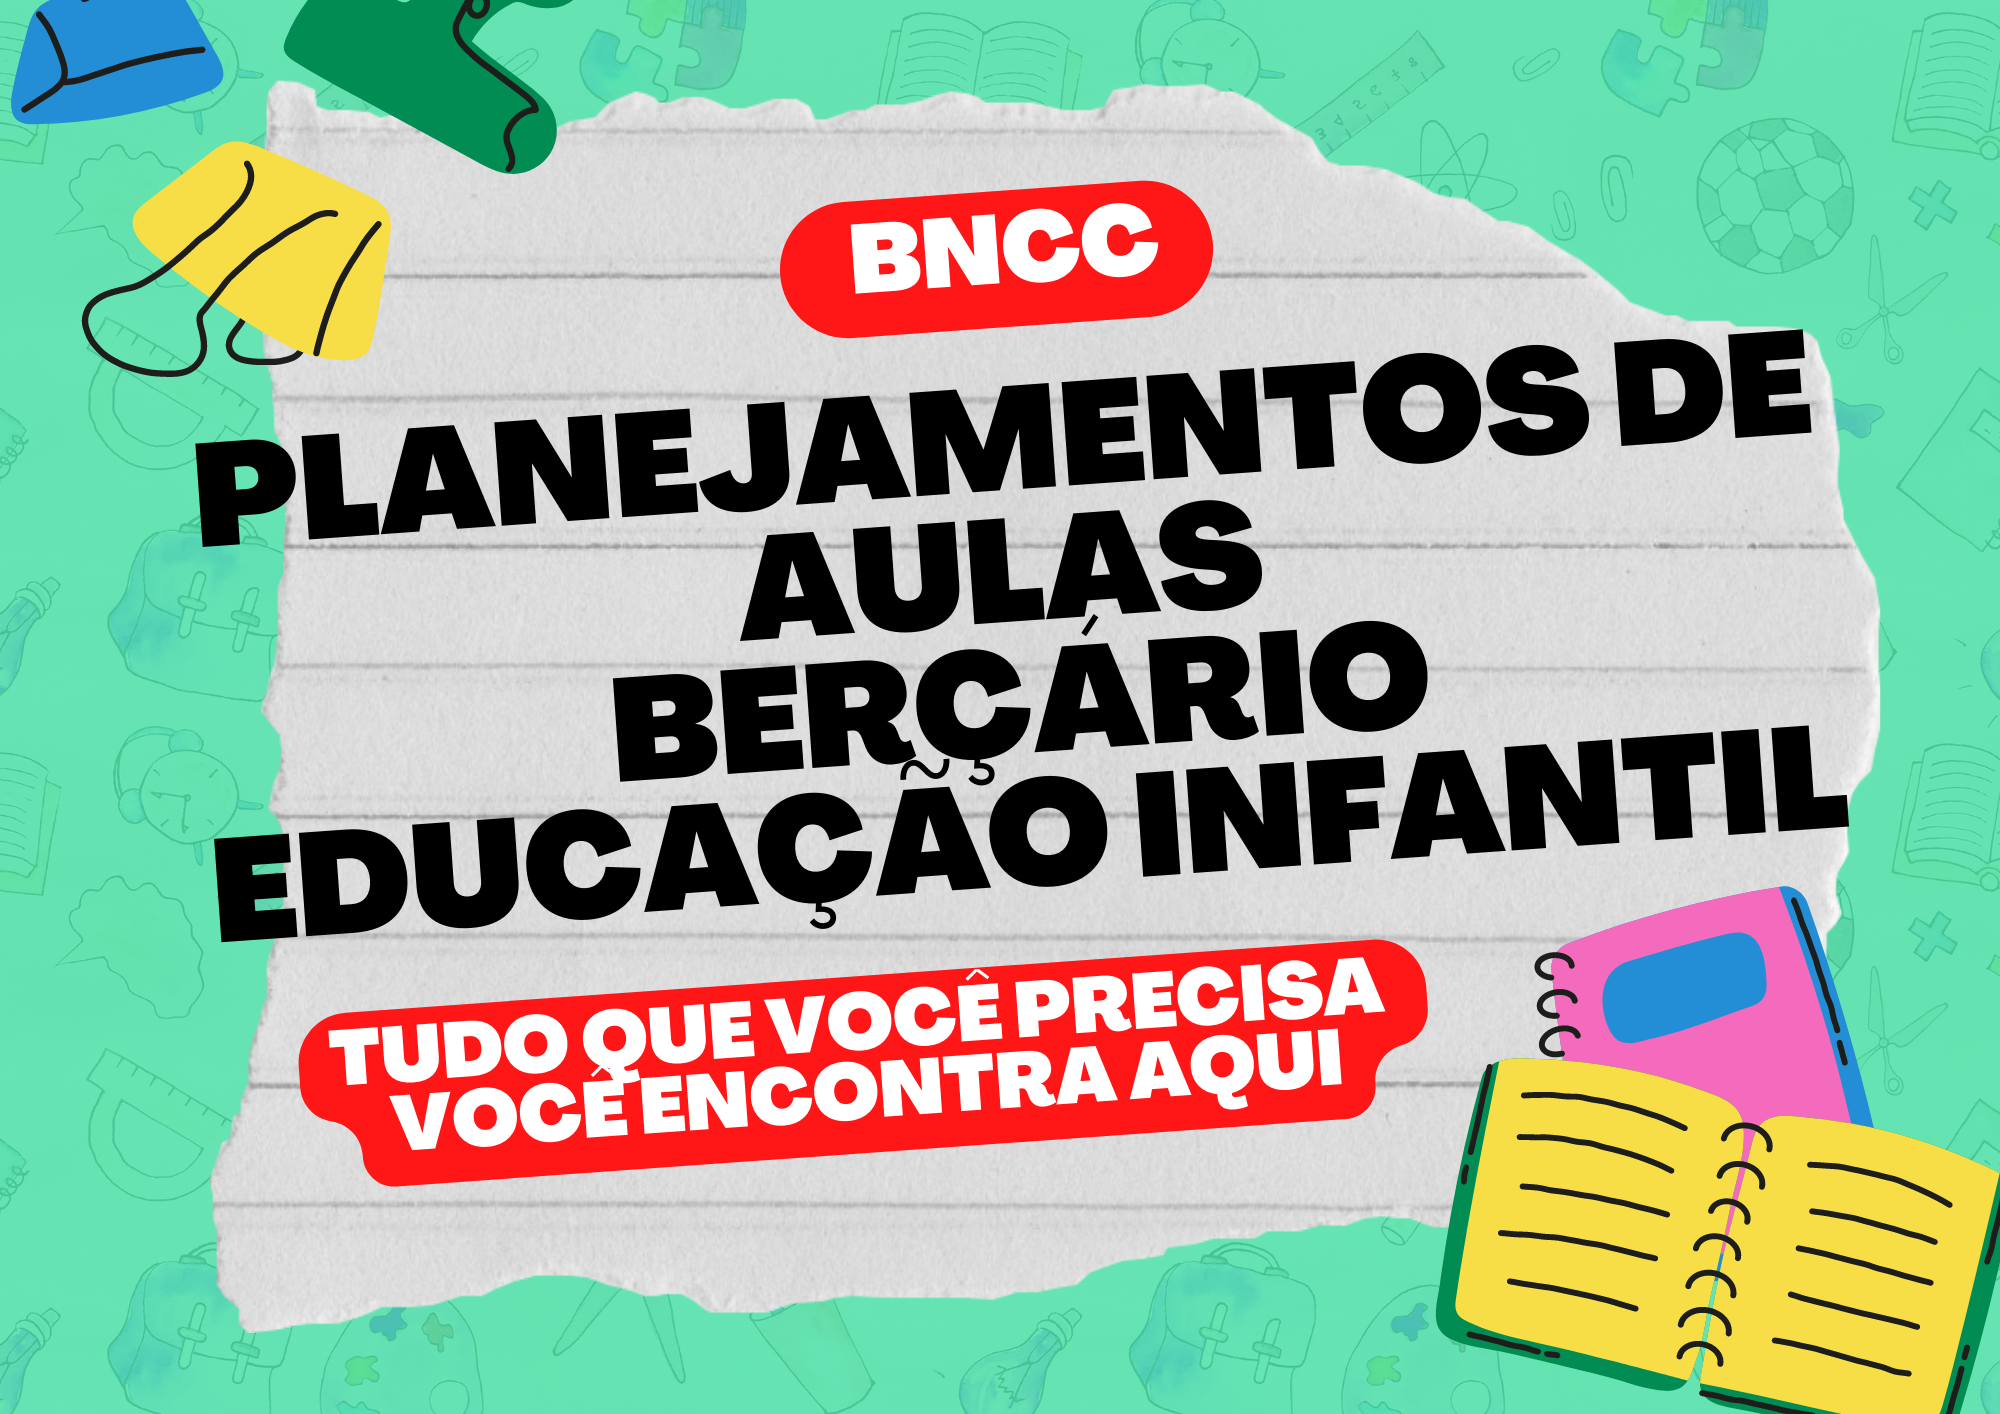 BNCC planejamentos de aulas berçário educação infantil tudo o que você precisa você encontra aqui